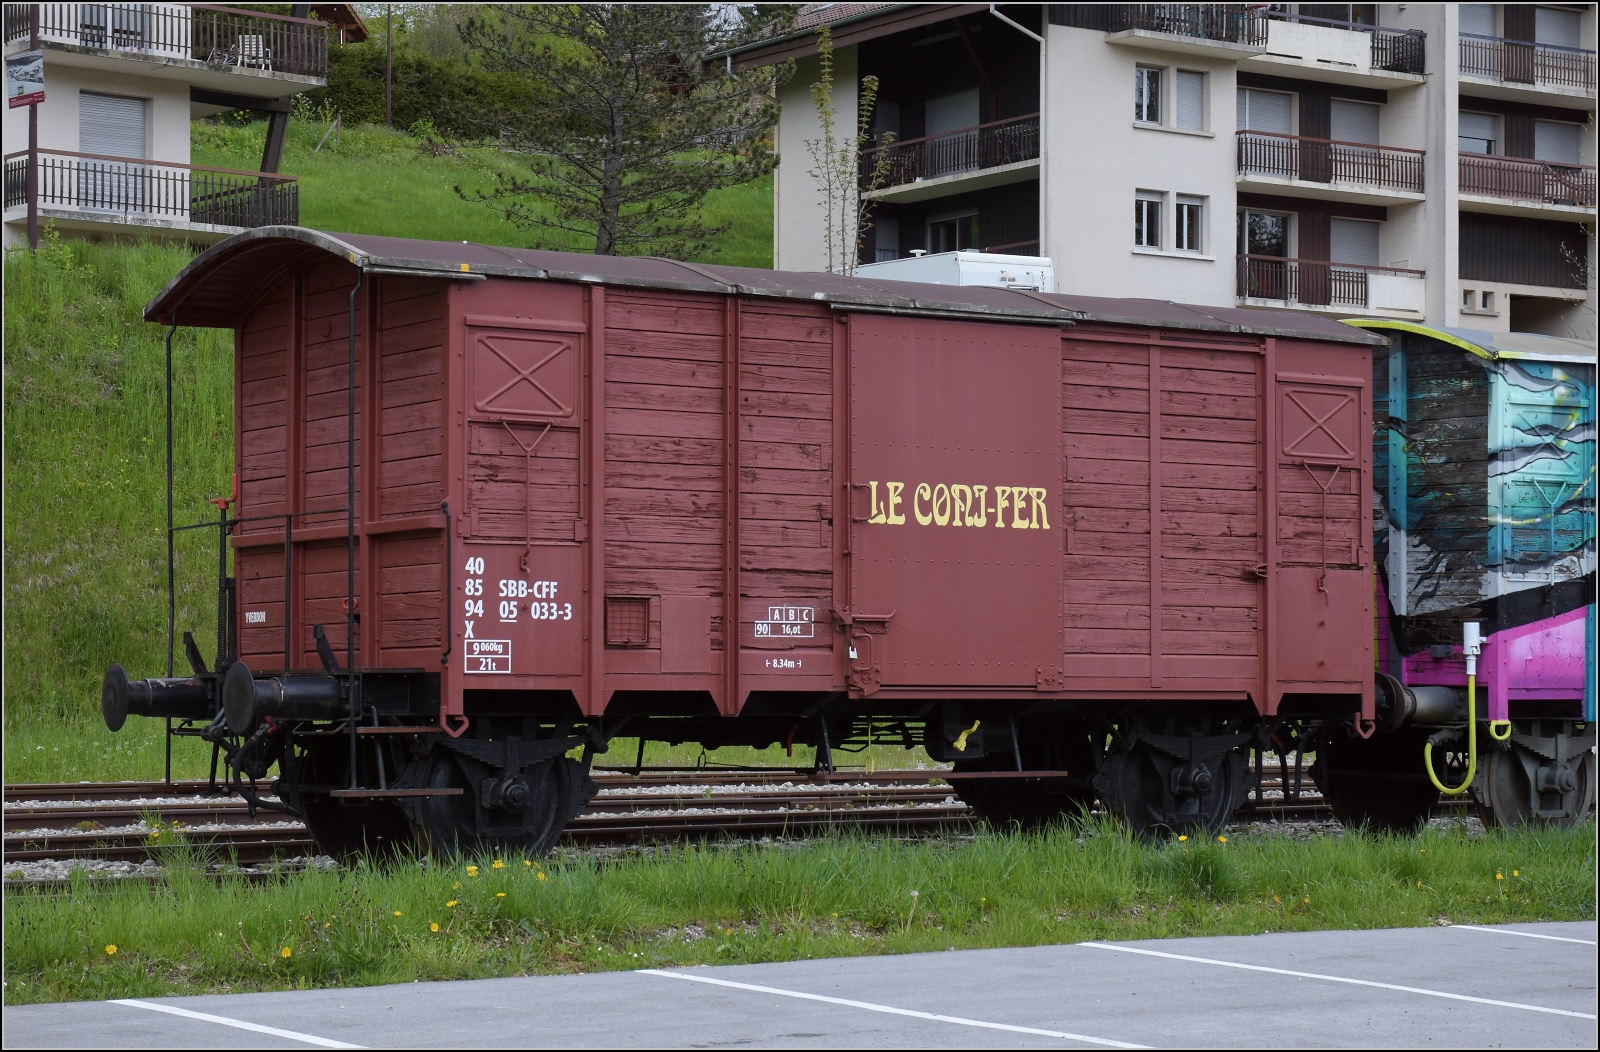 Abstecher zur Coni'fer. Ein hbsch restaurierter gedeckter Gterwagen aus der Schweiz, der offenbar zuletzt als Dienstwagen in Betrieb war. 40 85 CFF-SBB 94 05 033-3 X in Les Hpitaux-Neufs. Mai 2023.